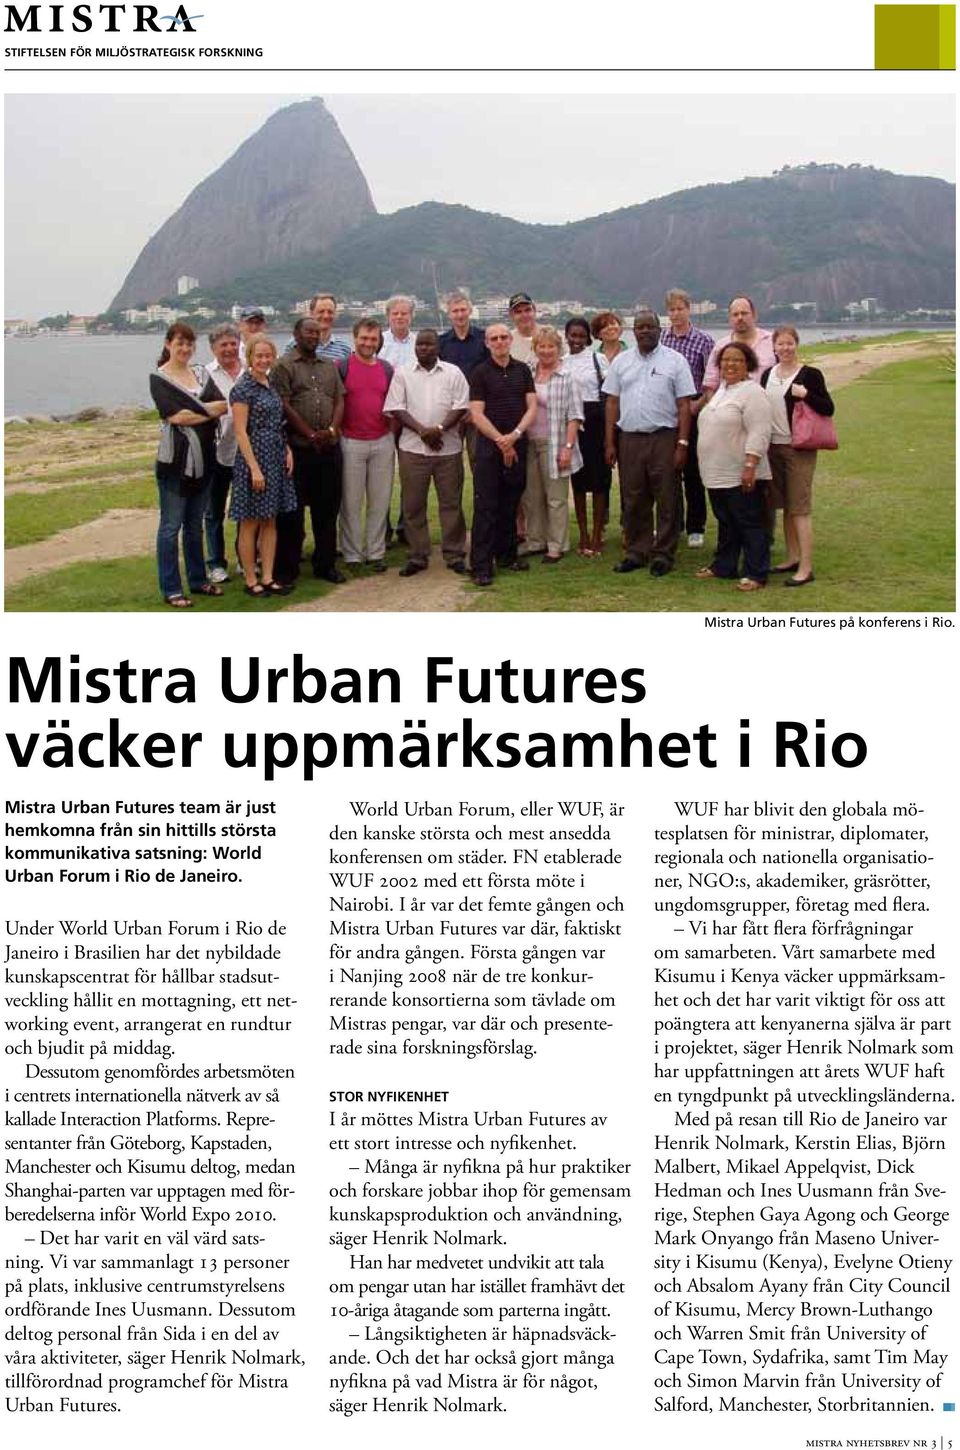 Under World Urban Forum i Rio de Janeiro i Brailien har det nybildade kunkapcentrat för hållbar tadutveckling hållit en mottagning, ett networking event, arrangerat en rundtur och bjudit på middag.